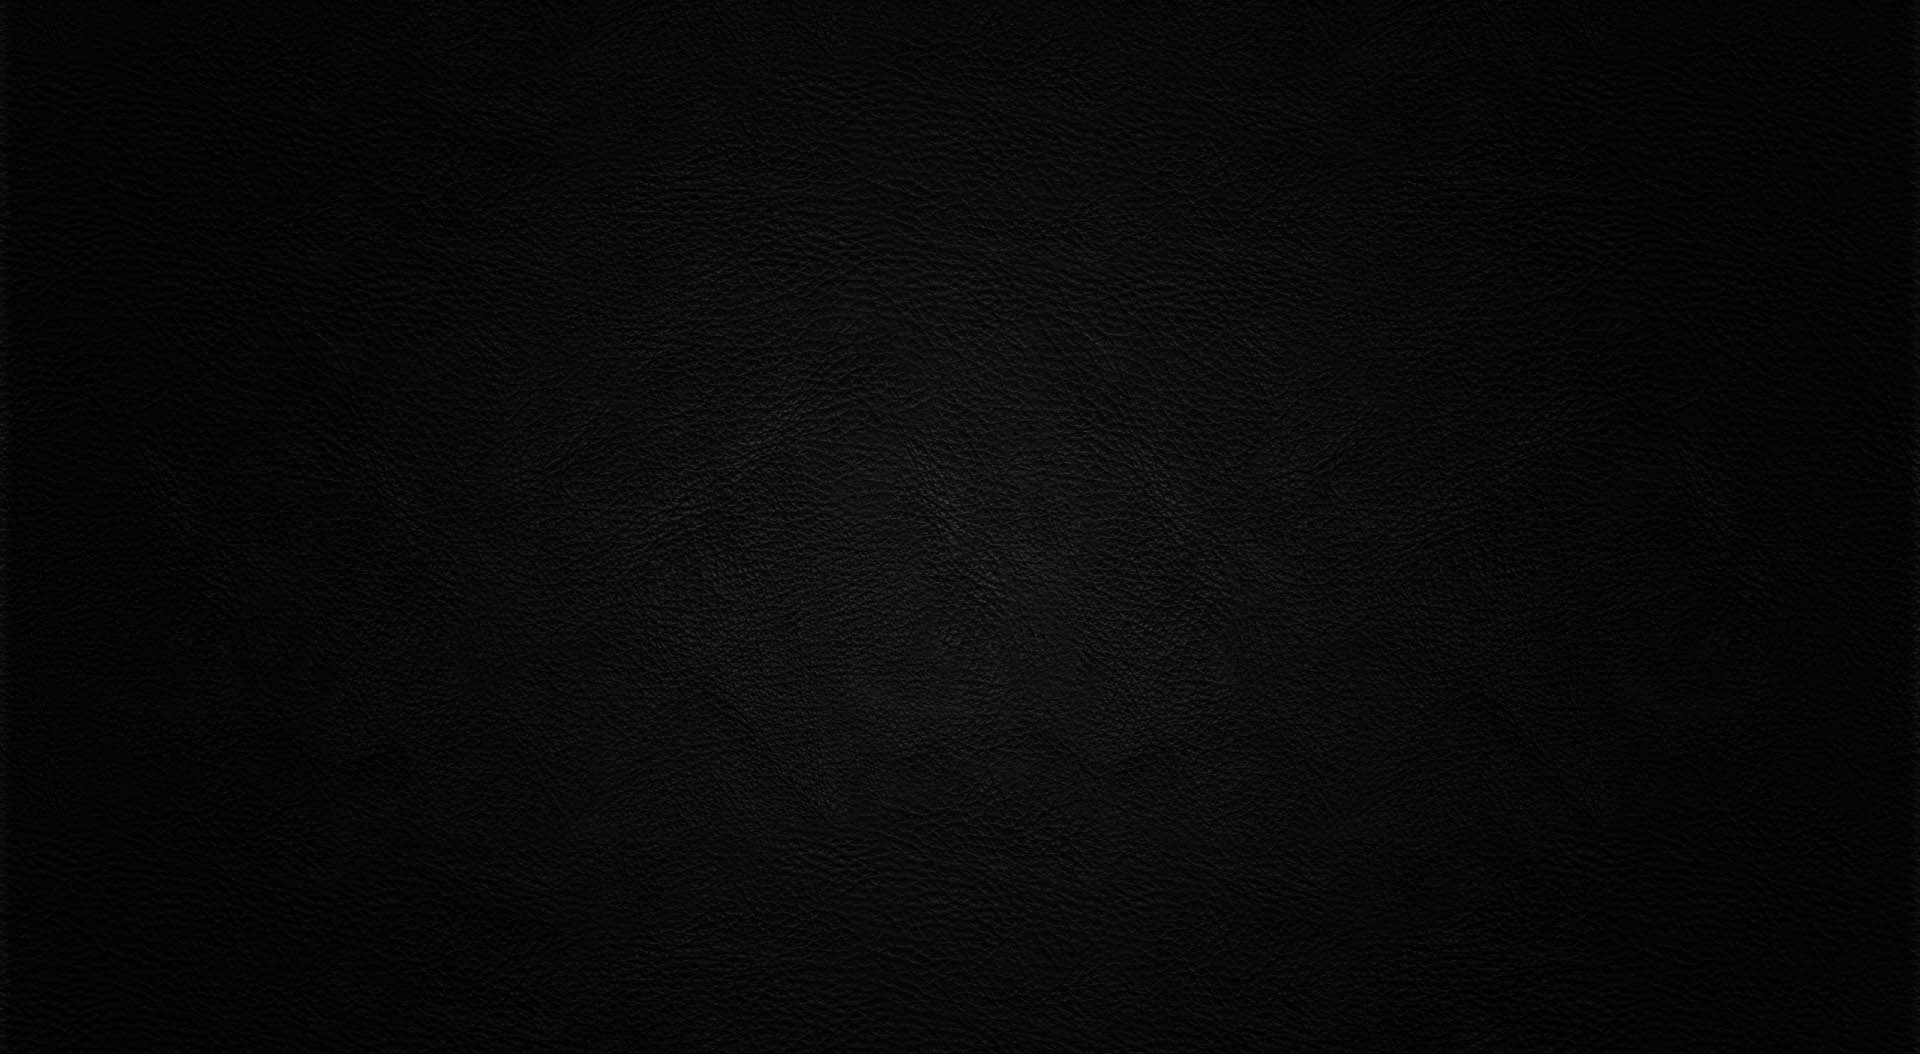  Black  Leather Wallpaper  HD  PixelsTalk Net